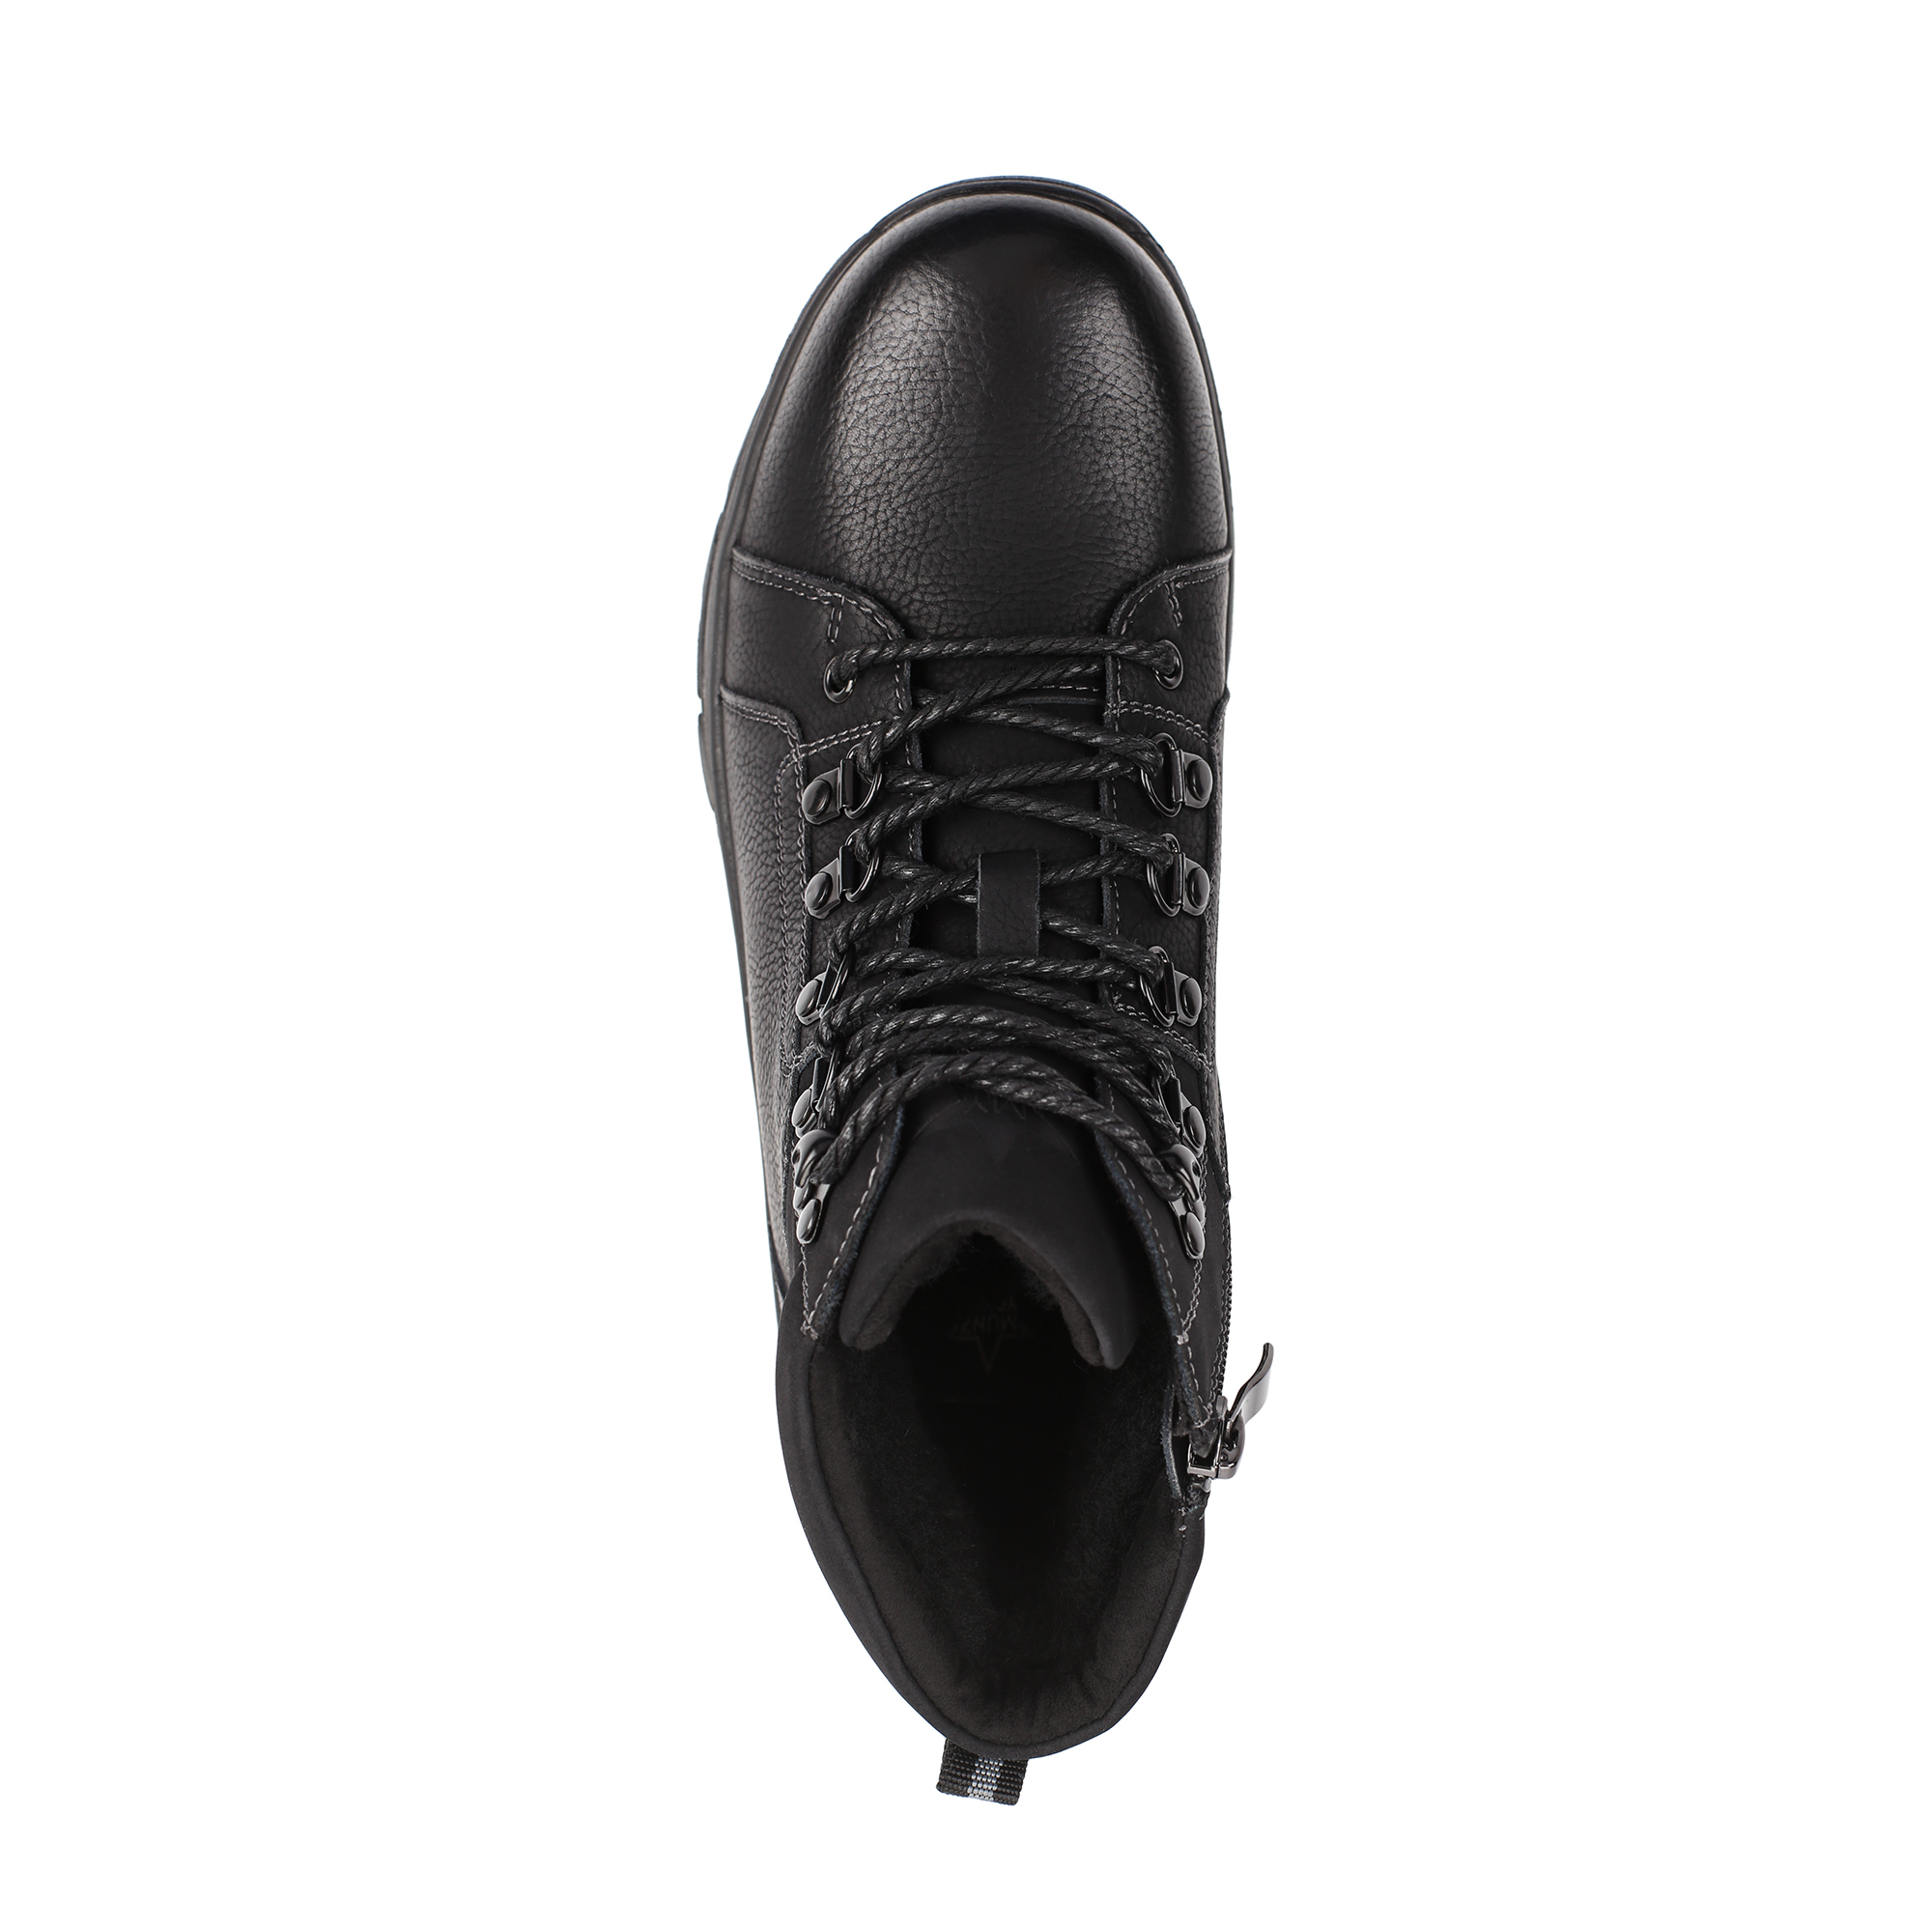 Обувь для мальчиков MUNZ YOUNG 098-677A-5602, цвет черный, размер 40 - фото 5